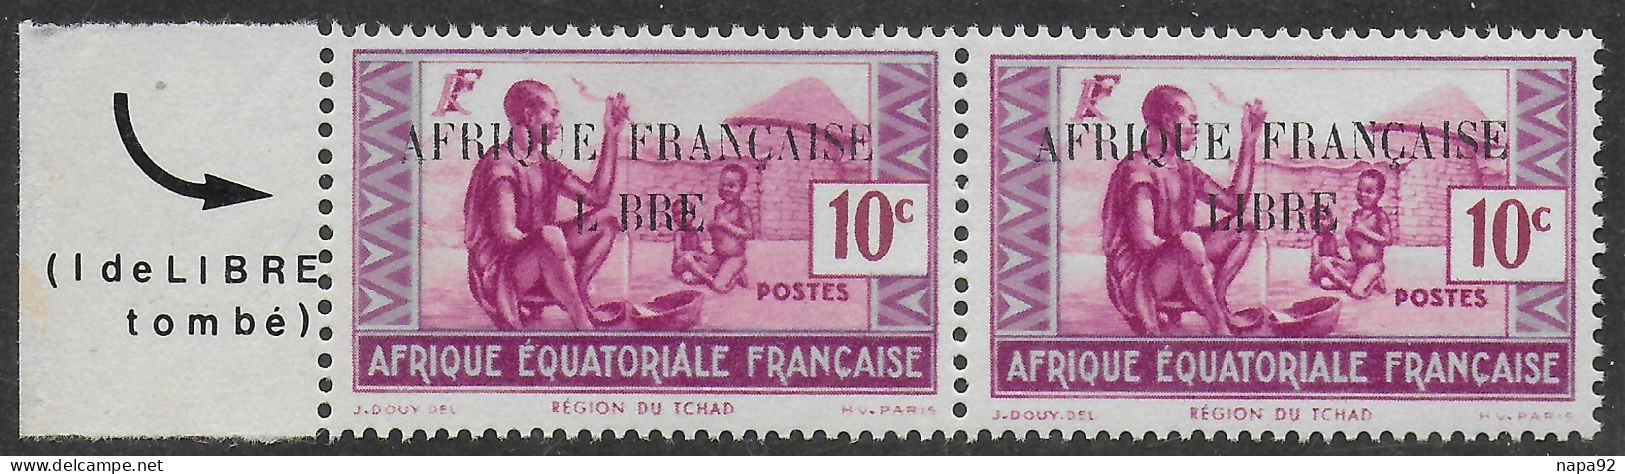 AFRIQUE EQUATORIALE FRANCAISE - AEF - A.E.F. - 1940 - YT 96** - VARIETE - Neufs